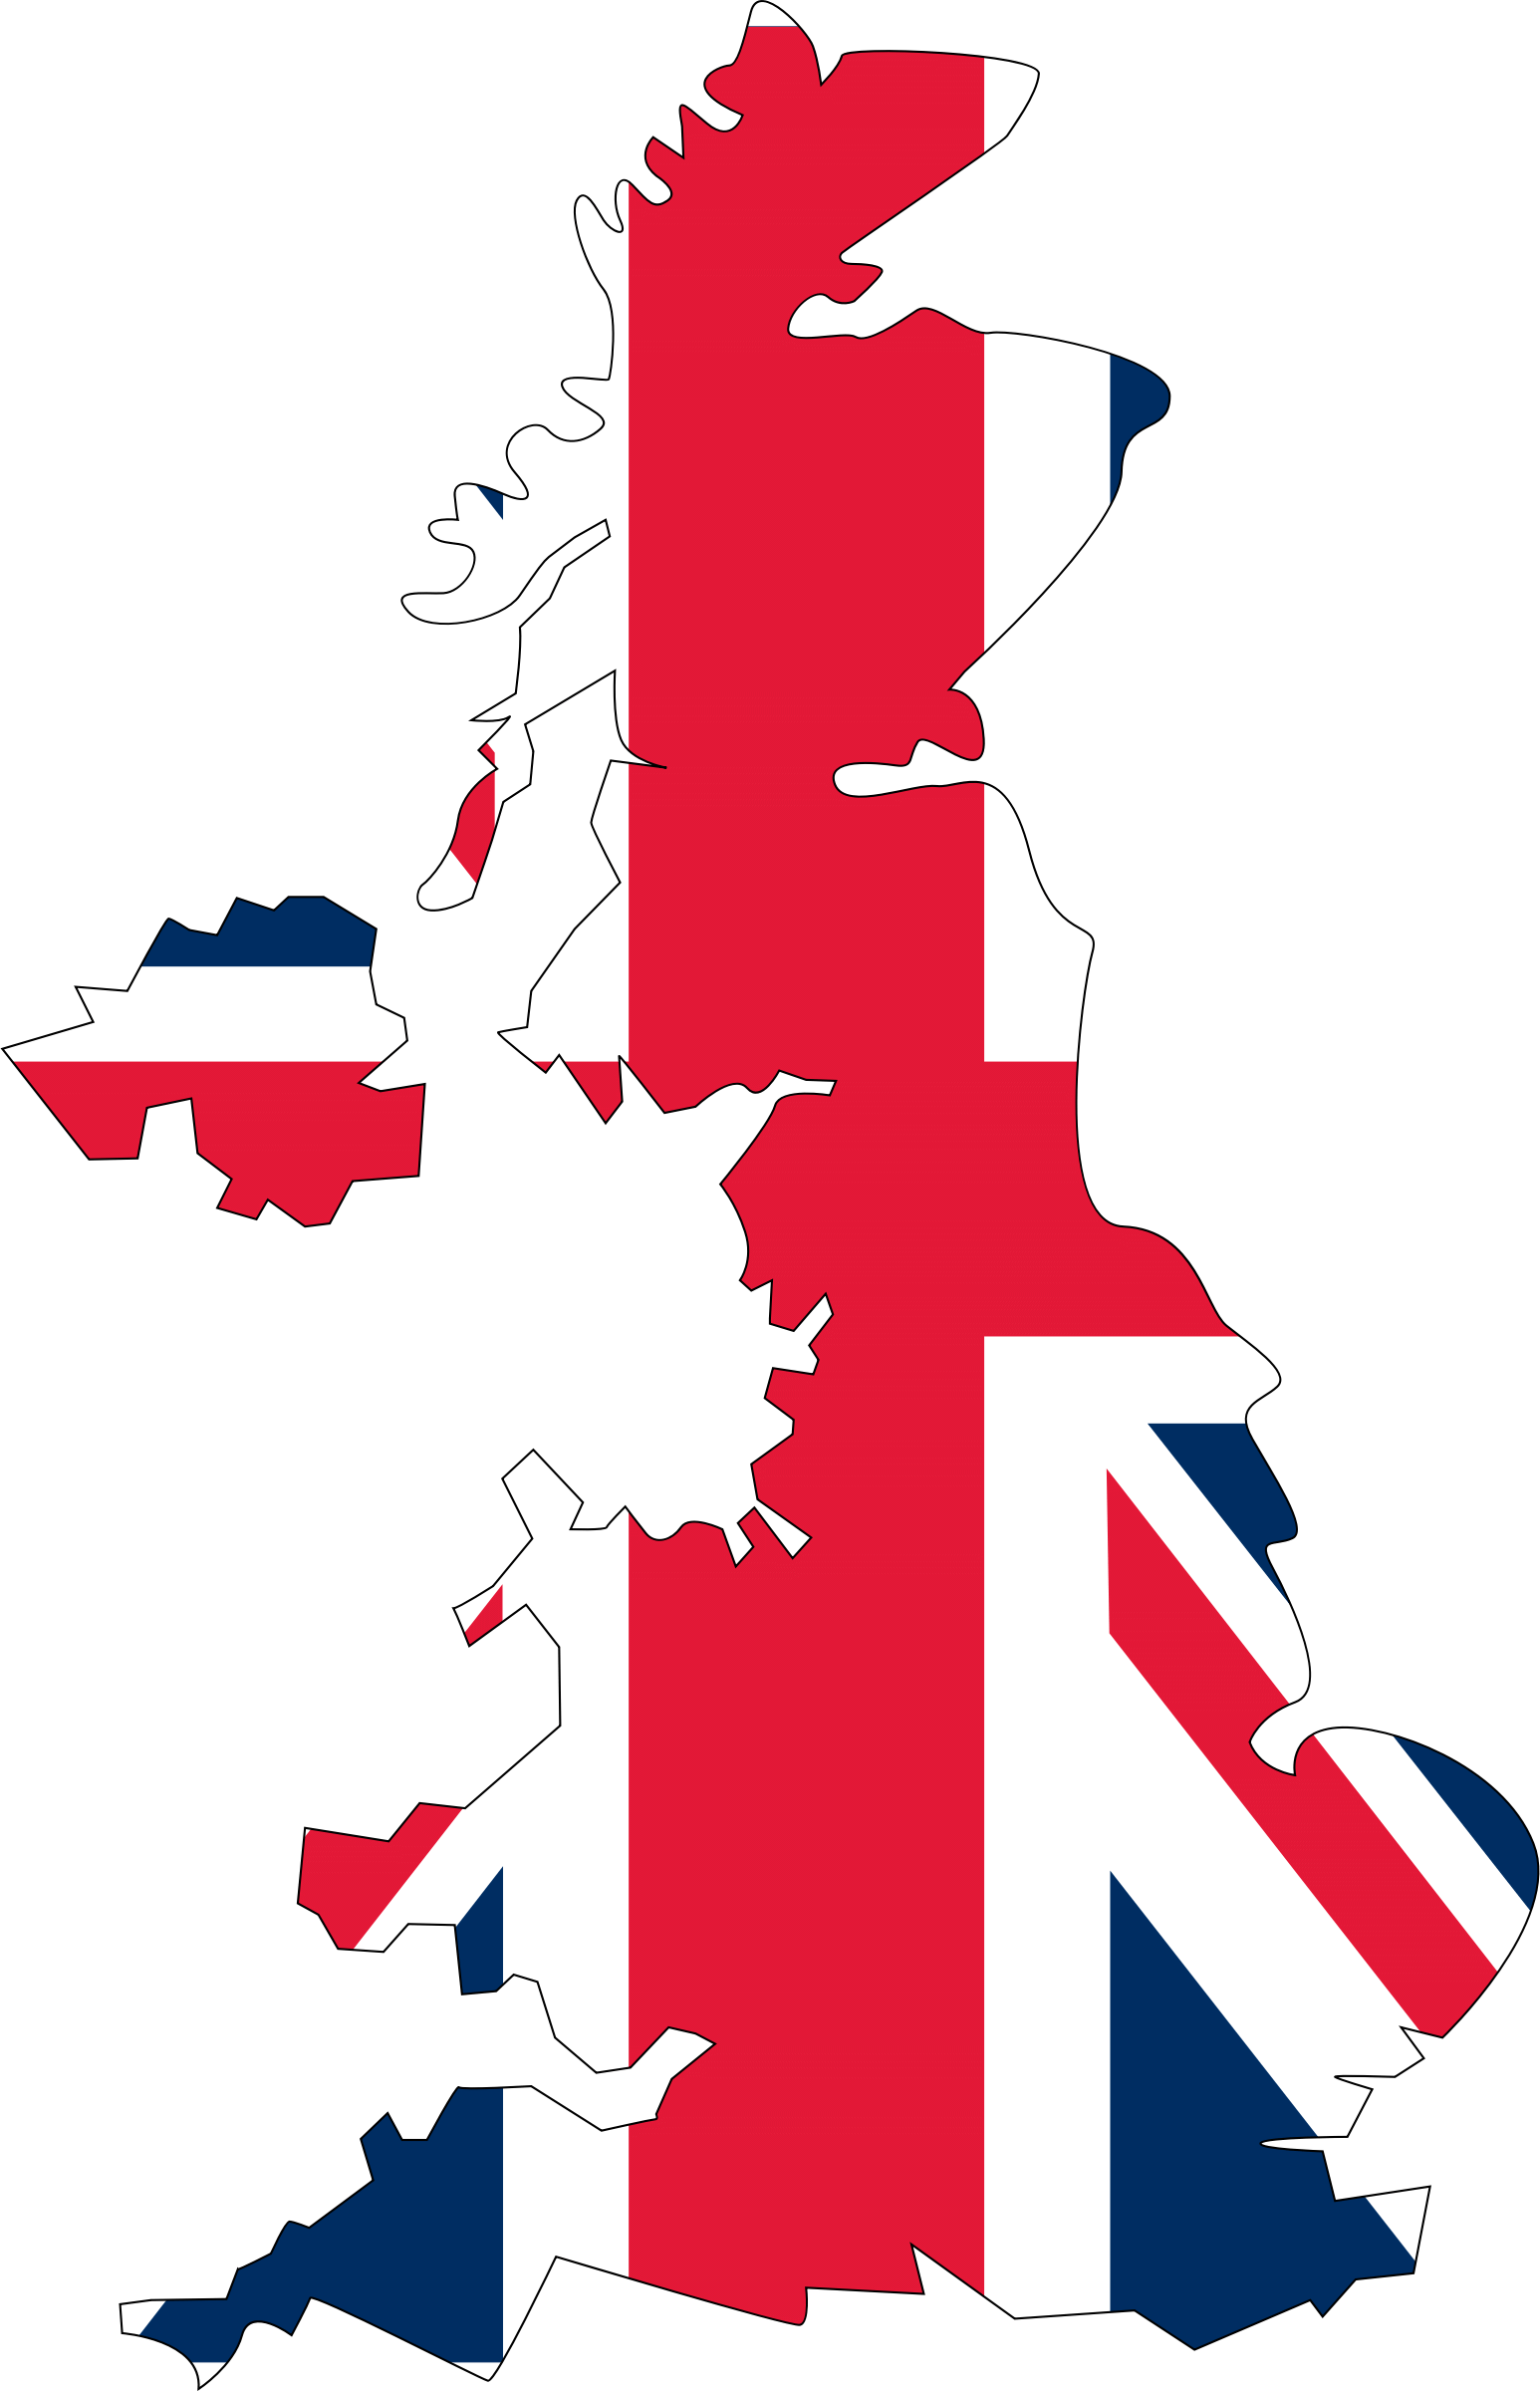 Контур Великобритании. Флаг Великобритании. Очертания Британии. Карта Великобритании без фона. Uk territory